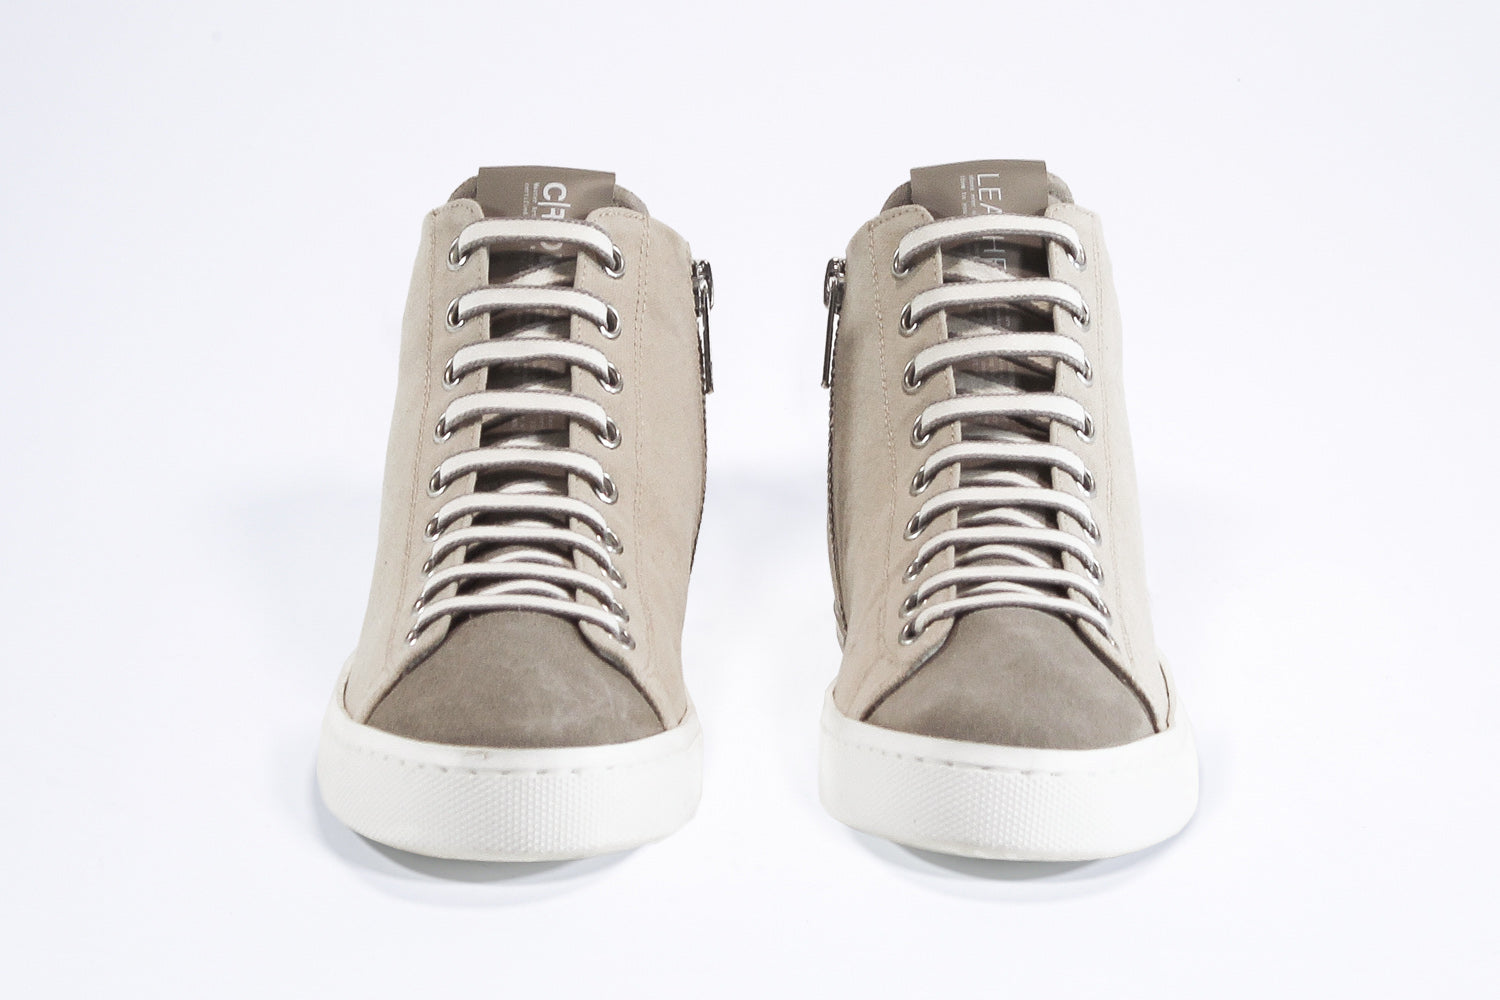 Vorderansicht von sneaker mit durchgehend beigem Canvas-Obermaterial, innerem Reißverschluss und weißer Sohle.